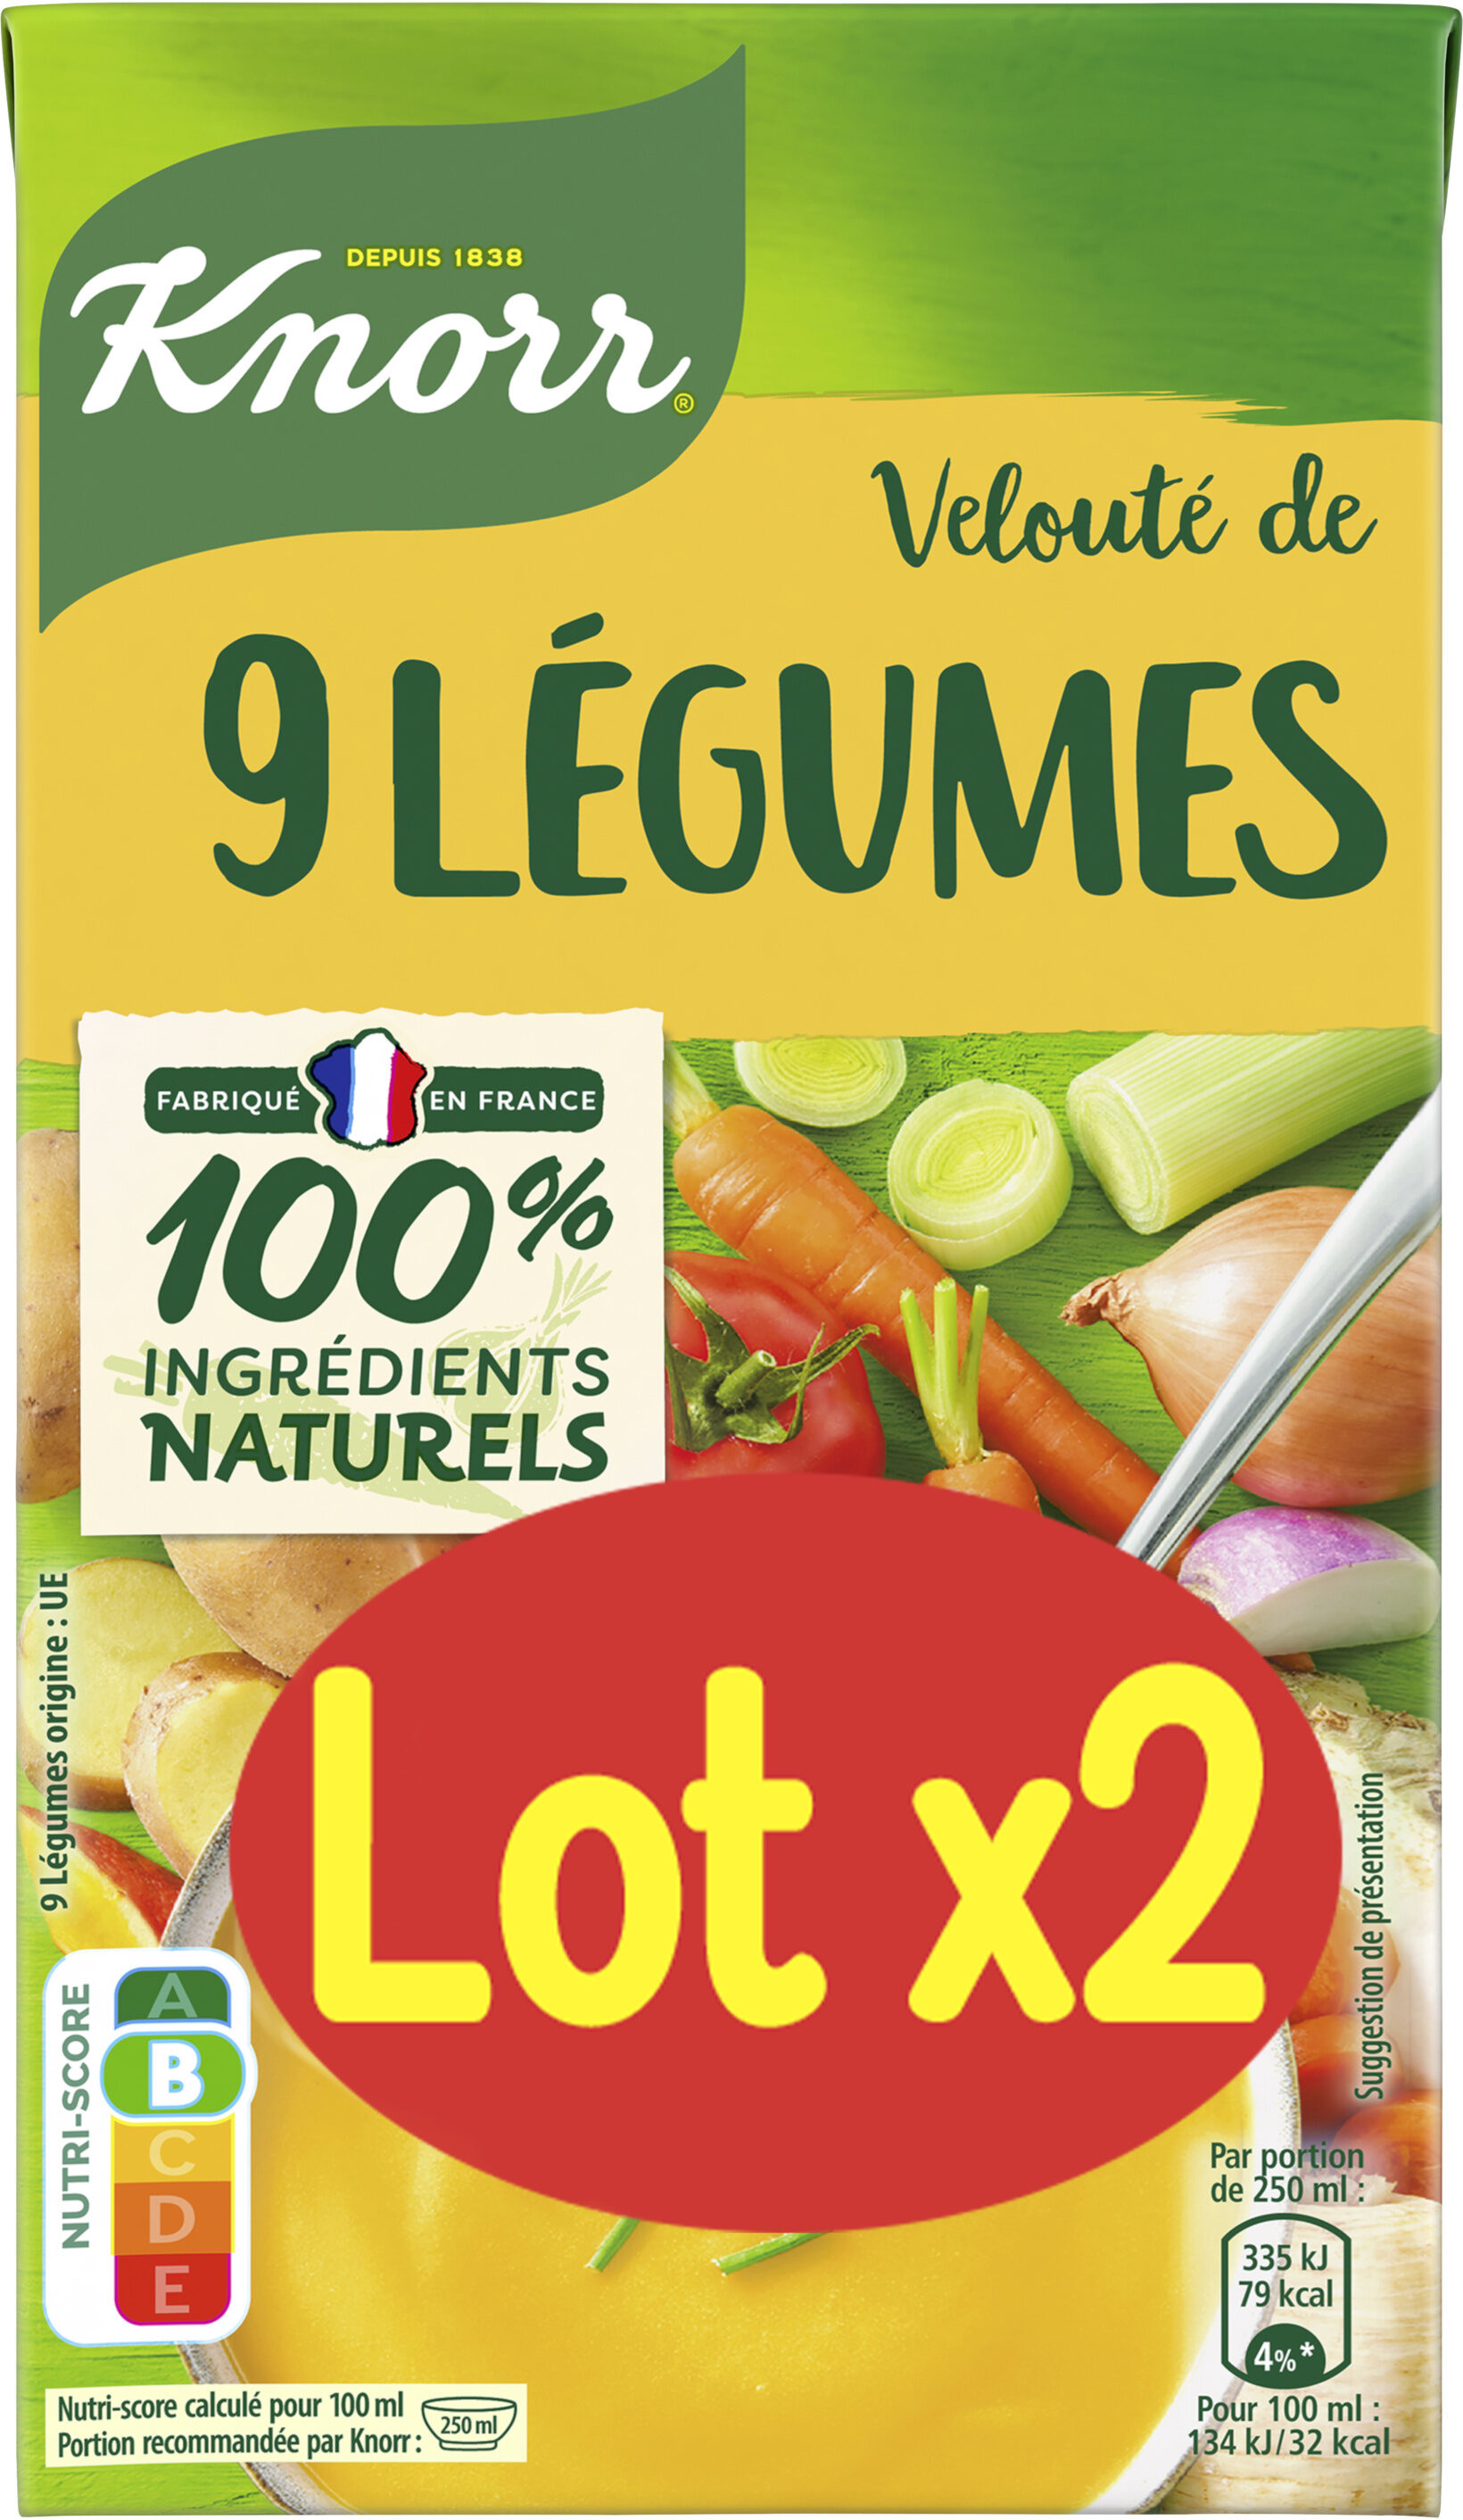 Knorr Soupe Liquide Velouté de 9 Légumes Lot 2x1L - Produkt - fr